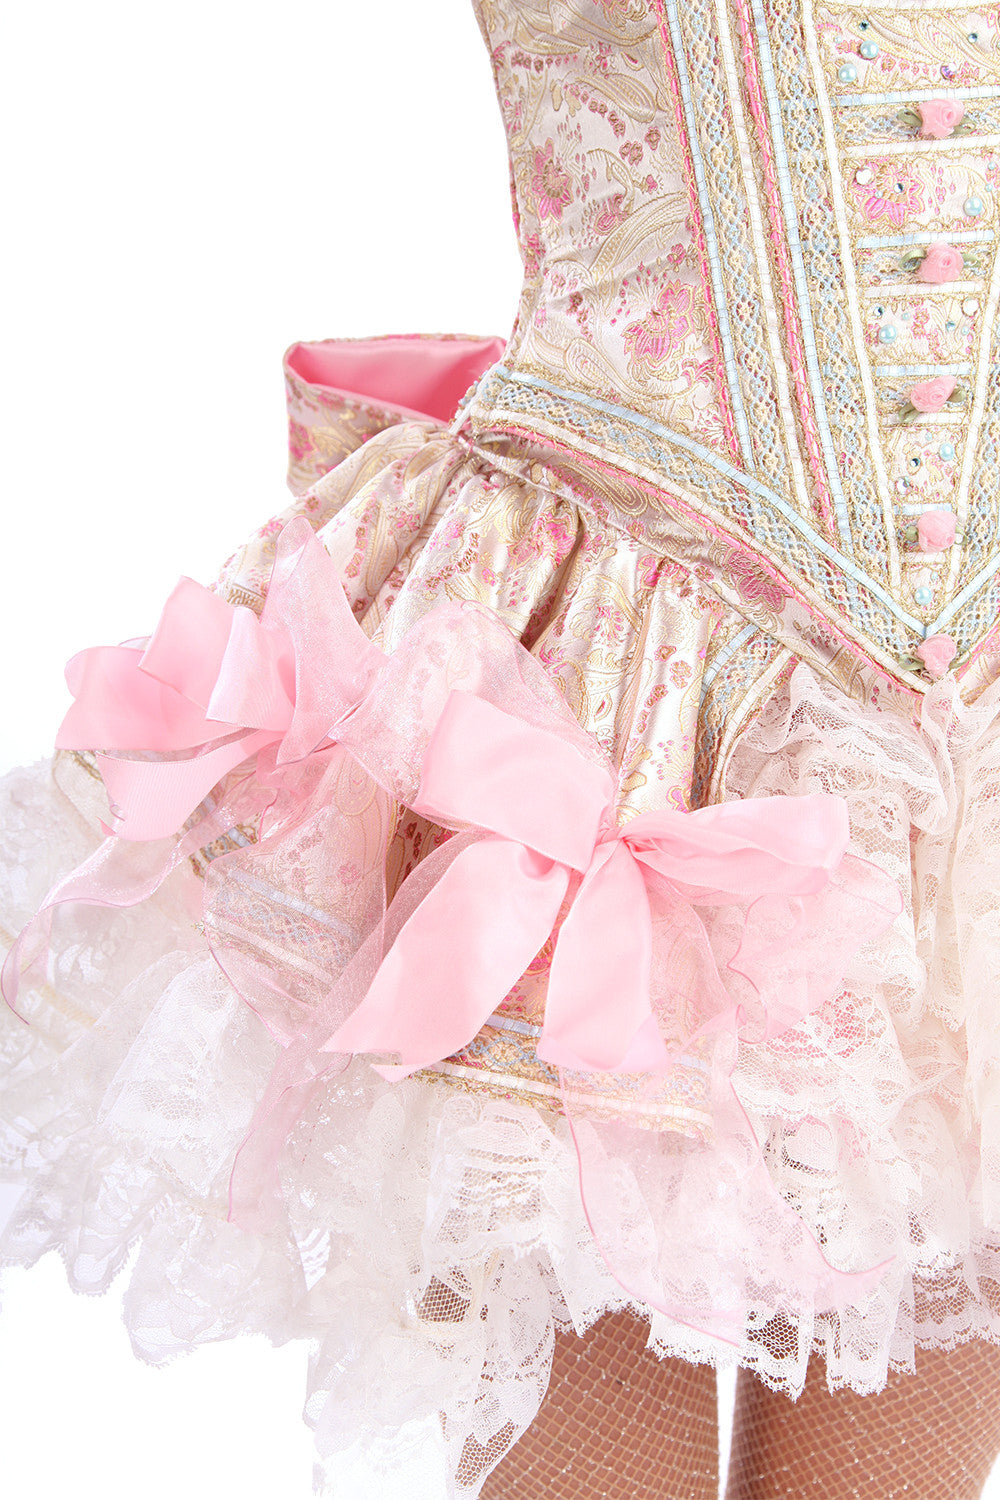 Marie Antoinette Skirt with Bustle